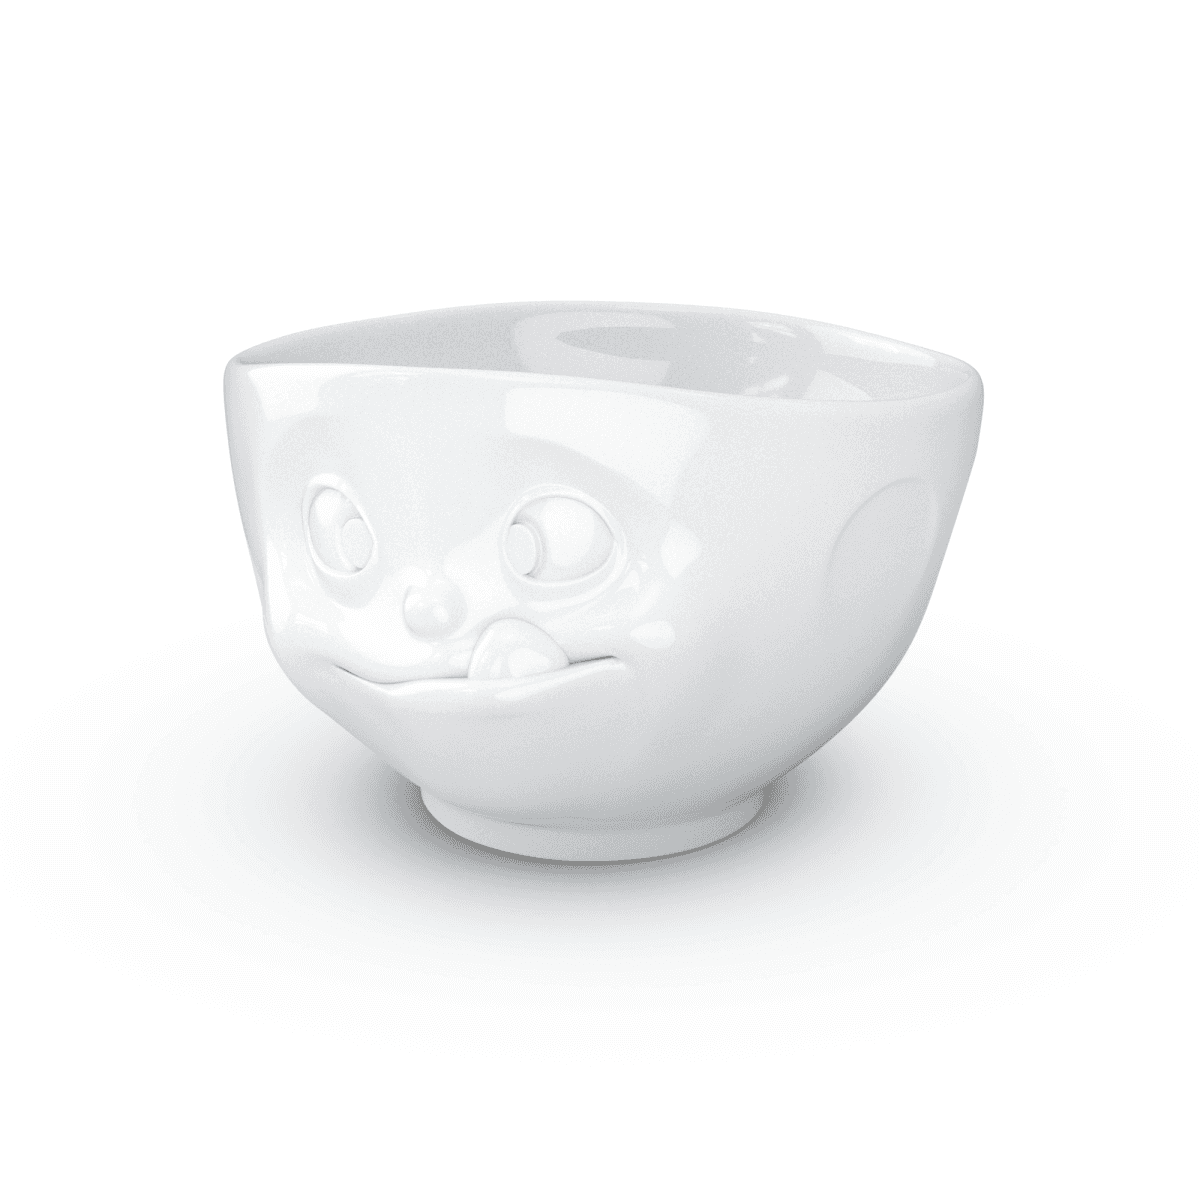 Immagine del prodotto Ciotola Goloso 3D in Porcellana 1000 ml | TASSEN By Fiftyeight Products